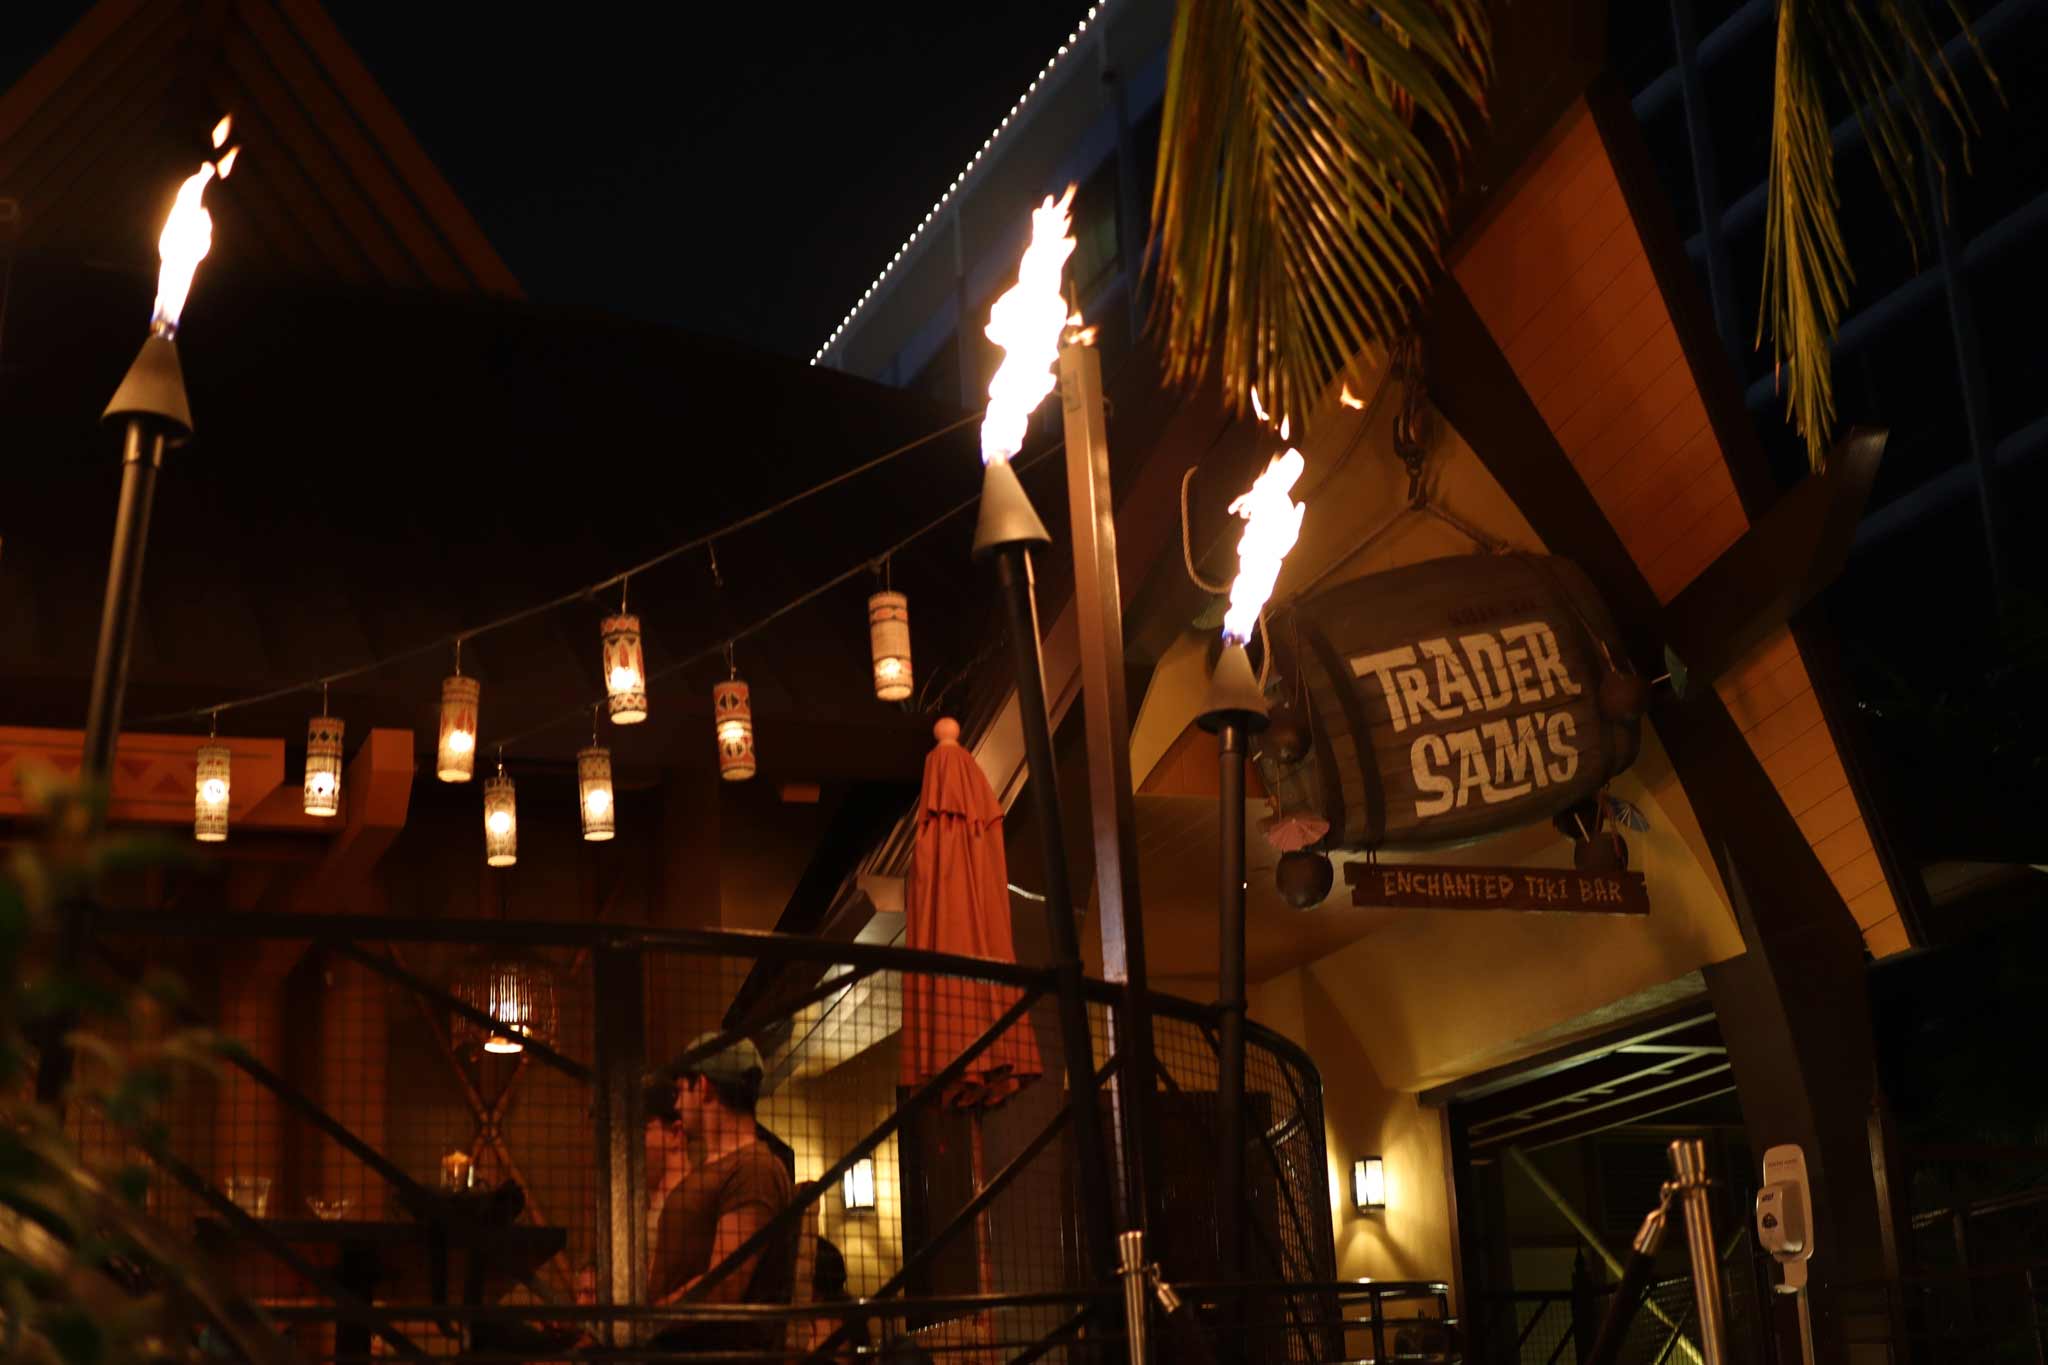 はこちら 【Disney】WDW Trader Sam's Enchanted Tiki Bar マグ (Disney/マグカップ・ティー